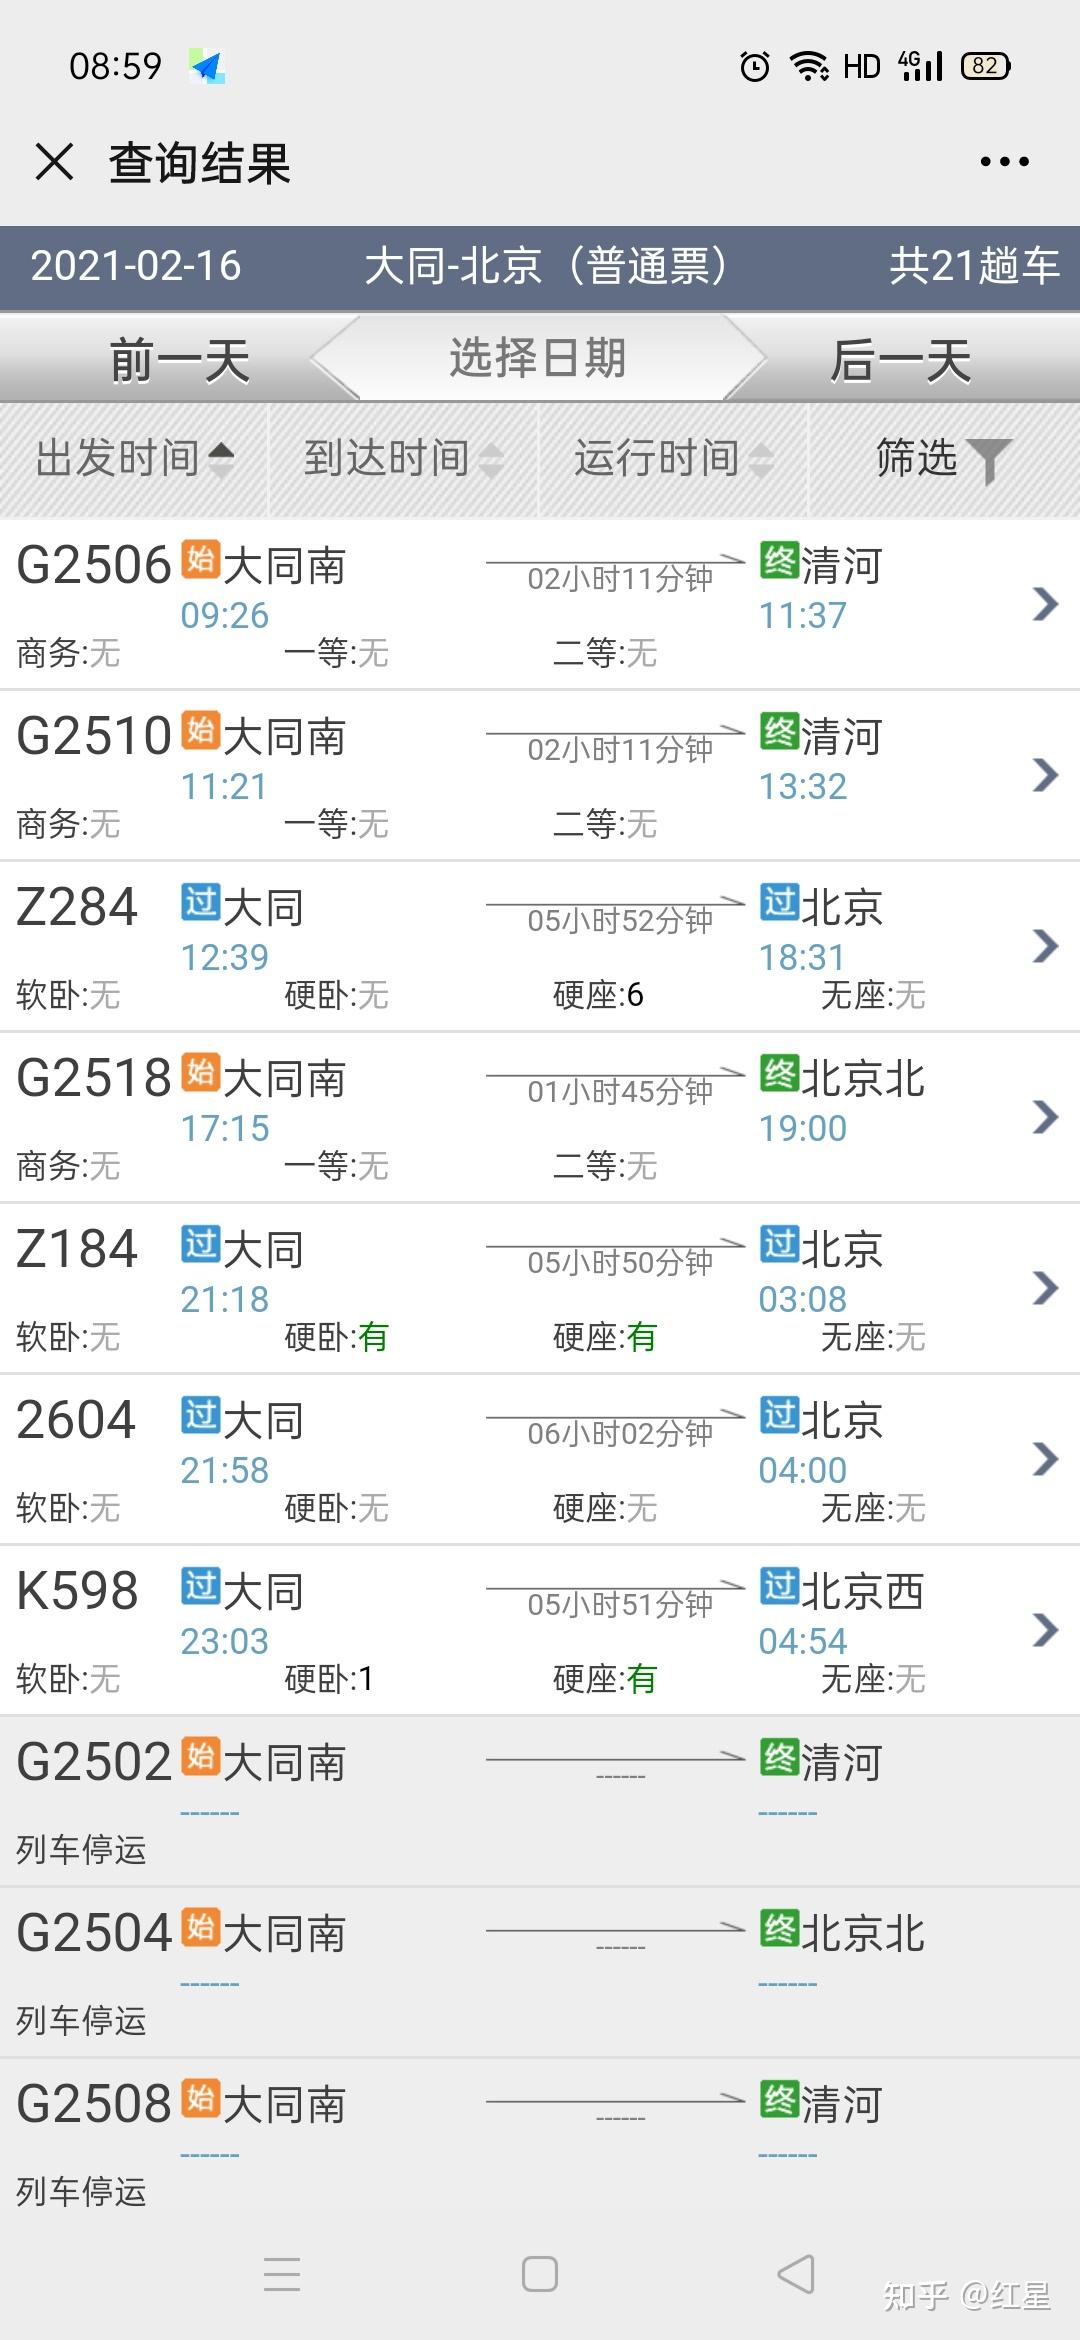 乘坐北京市郊铁路 S2 线是怎样的体验？ - 知乎